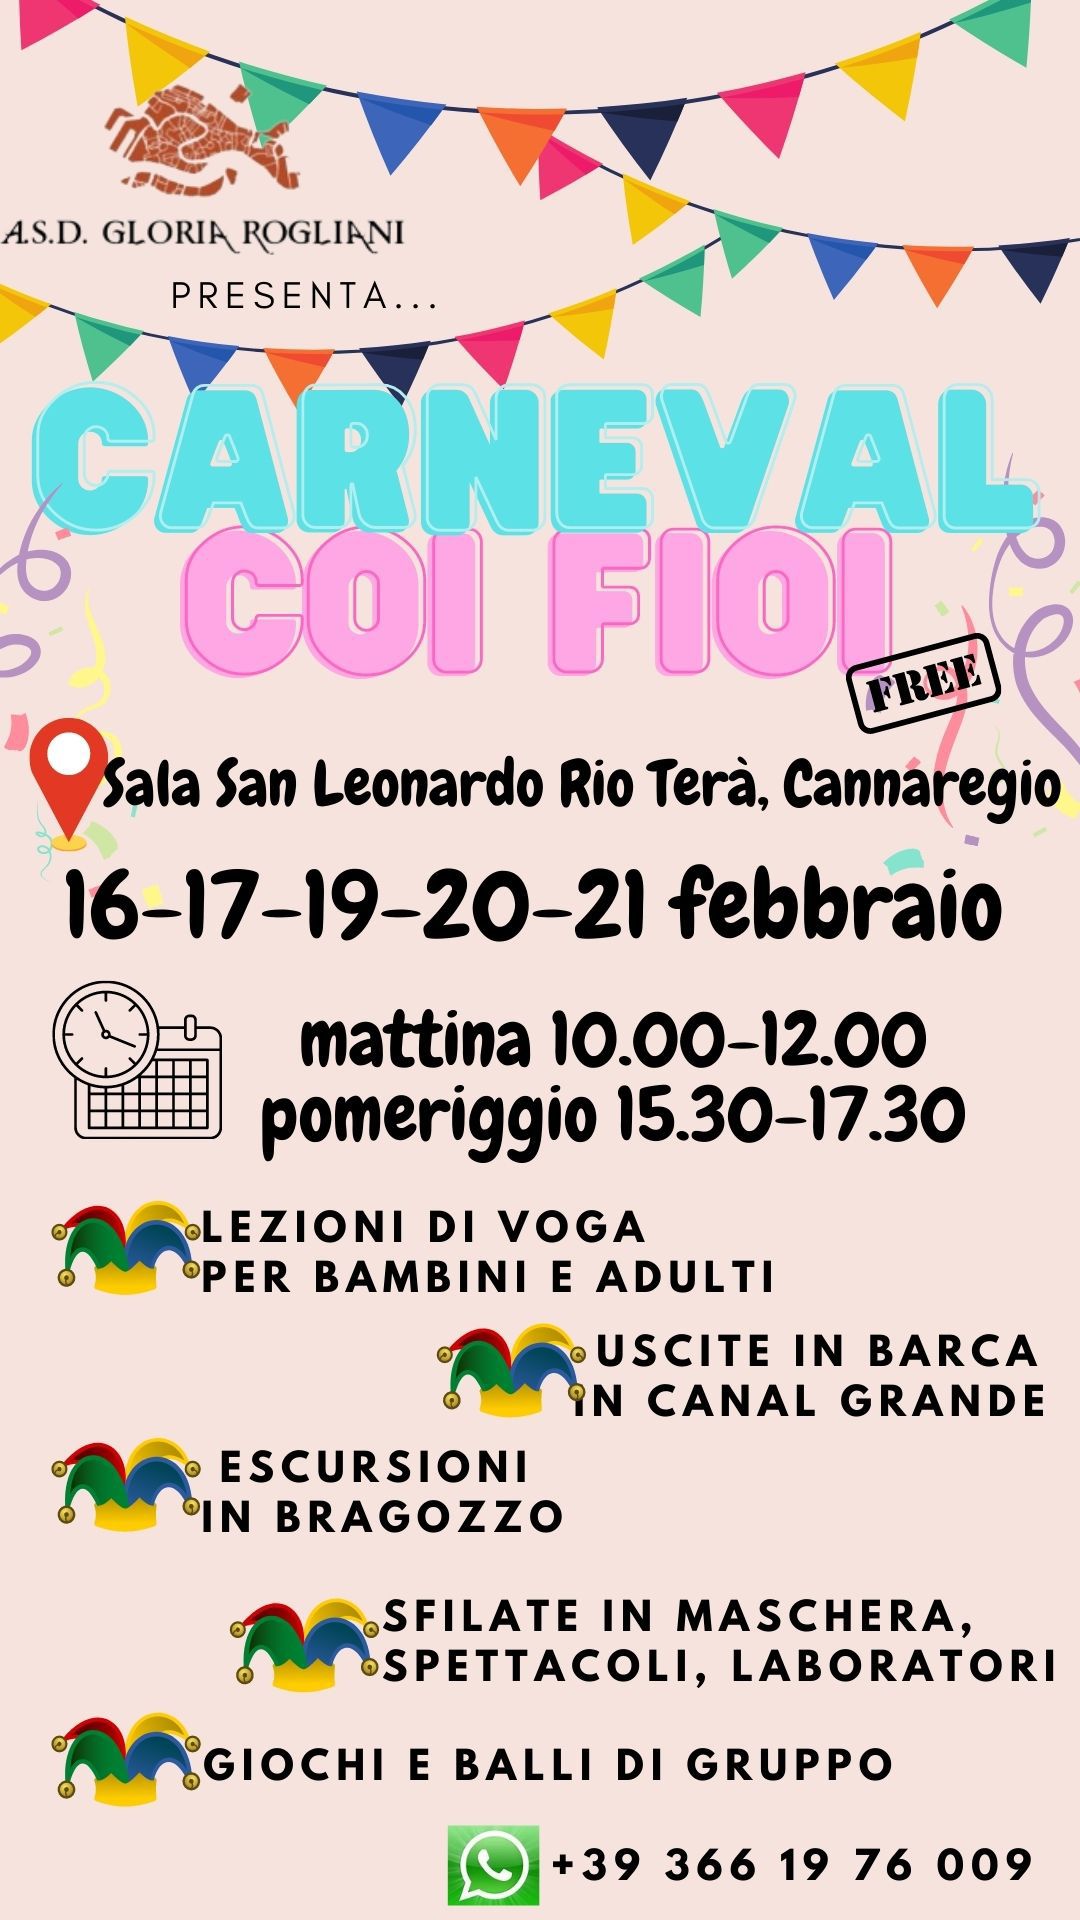 Event Carneval coi fioi Gloria Rogliani A.S.D.